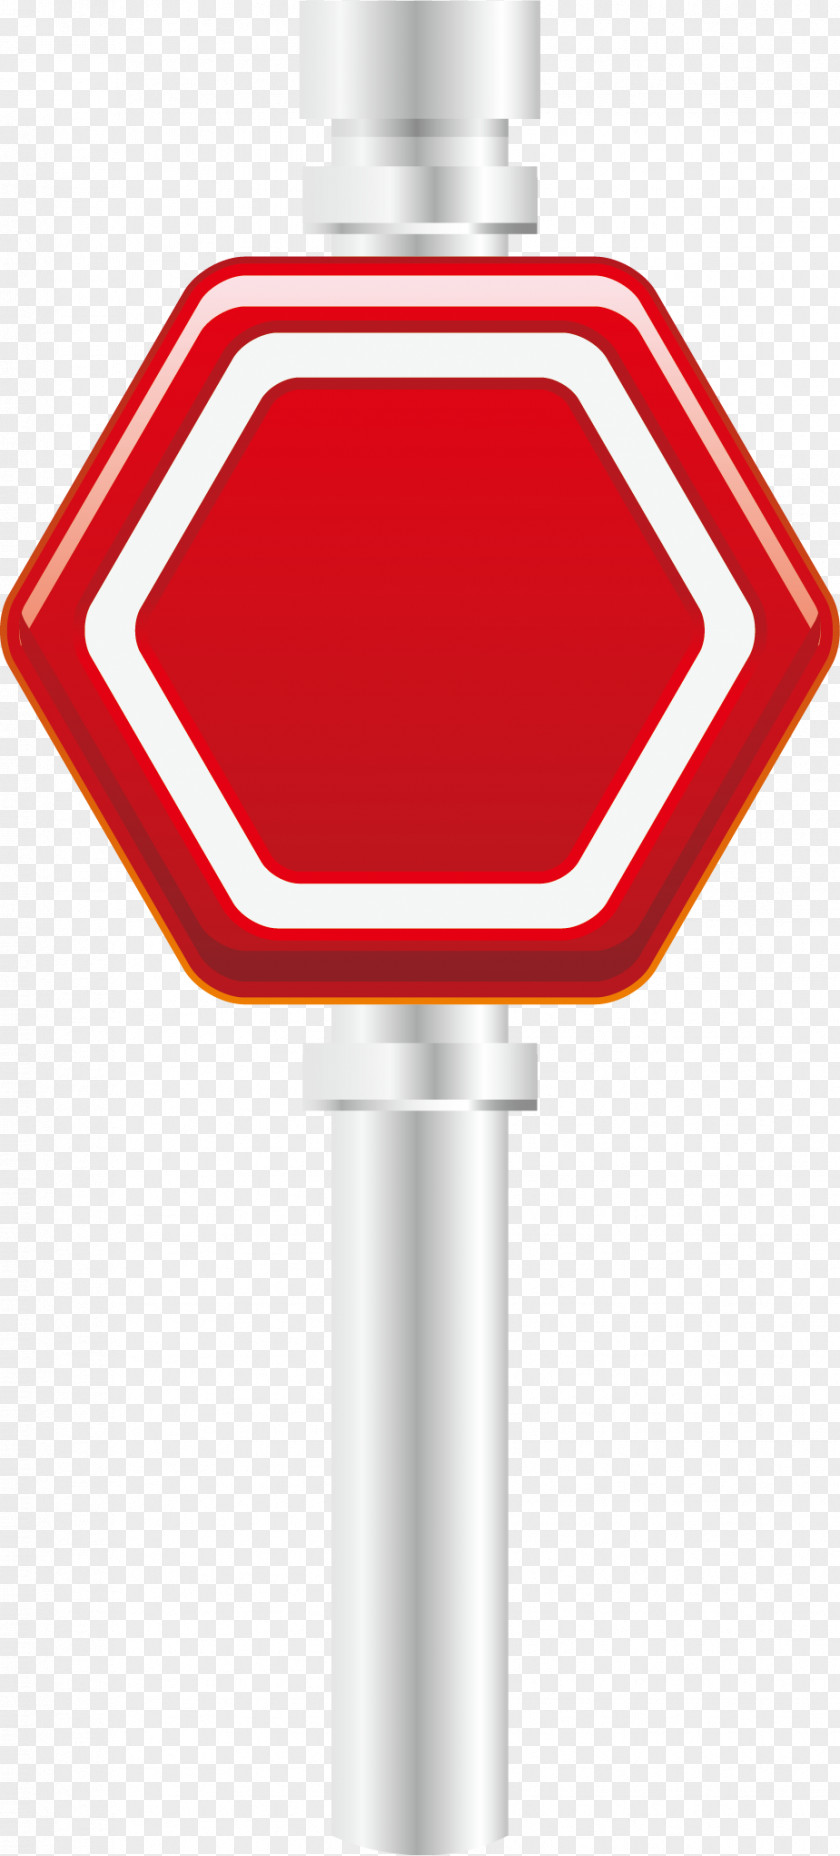 Red Position Flag Element Light Traffic Sign Illustration PNG